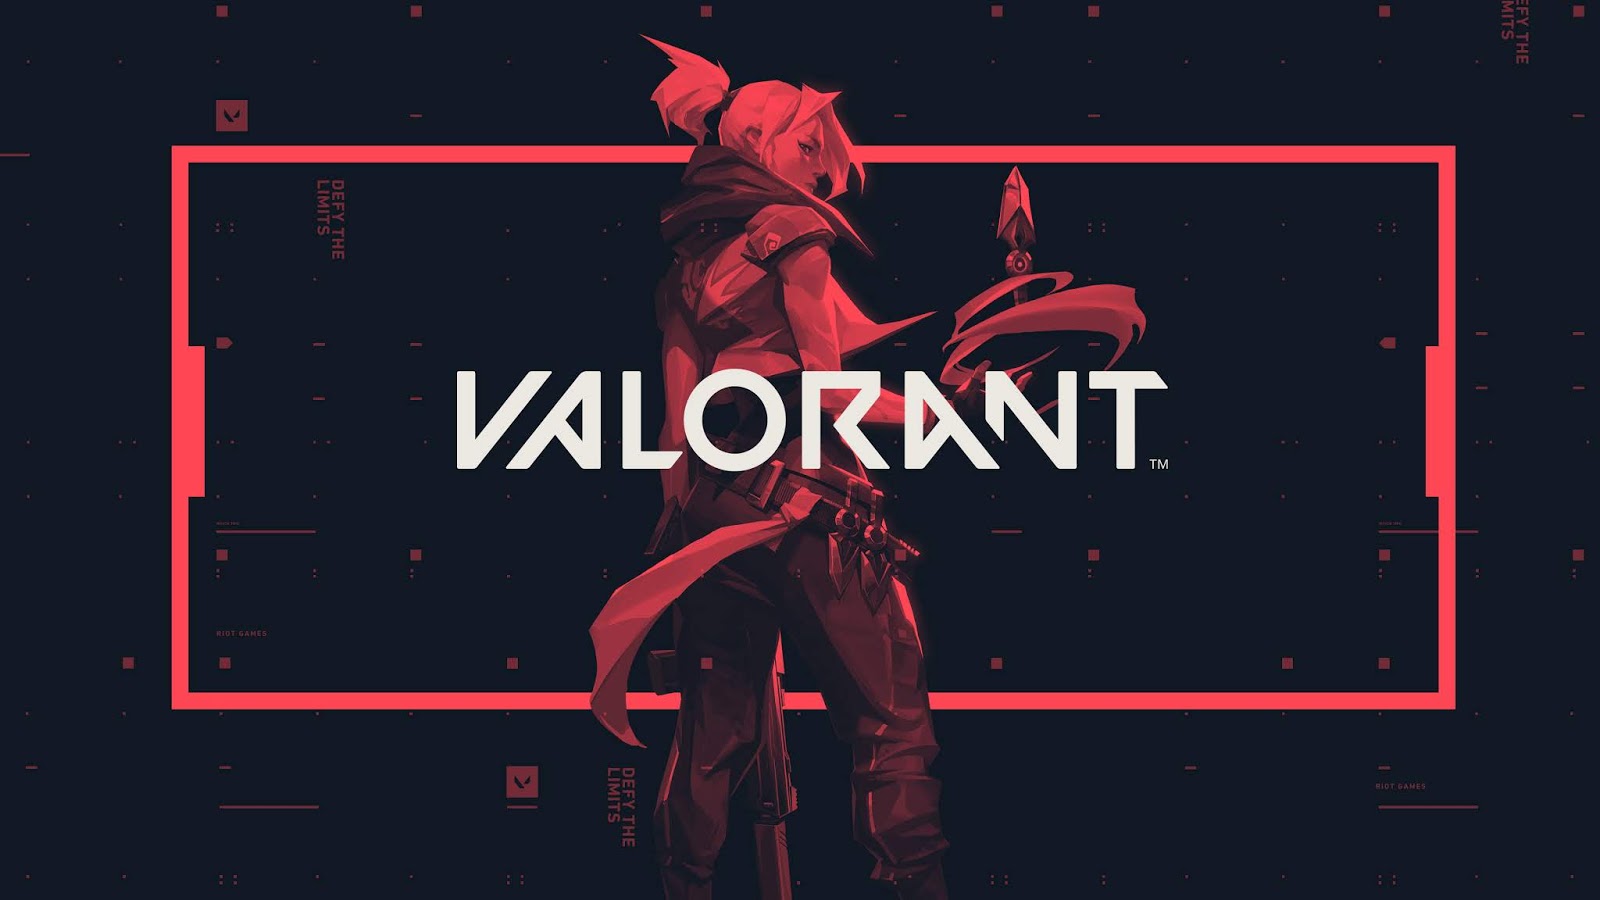     ! Riot Games  Valorant.